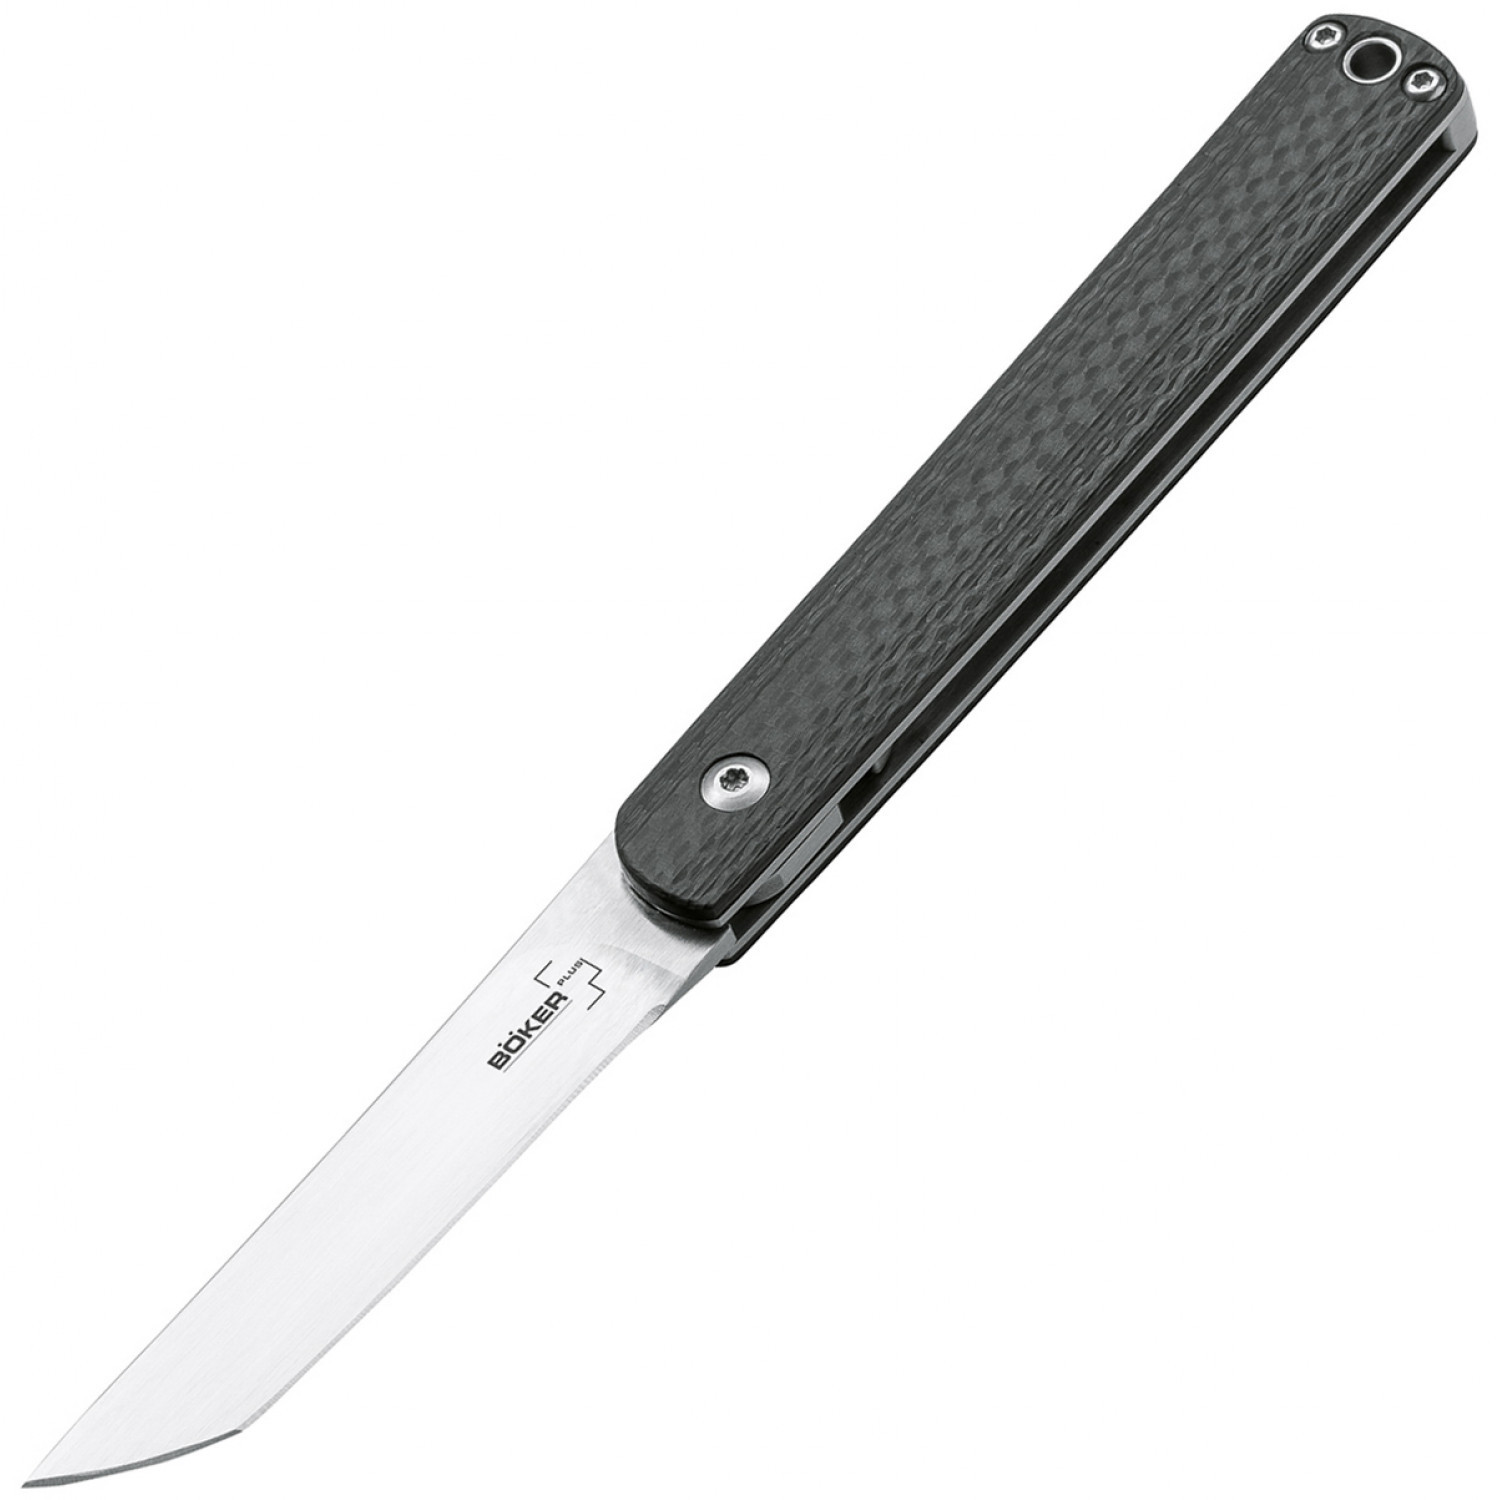 Складной нож Wasabi CF - Boker Plus 01BO632, лезвие сталь 440C Satin, рукоять карбон, чёрный